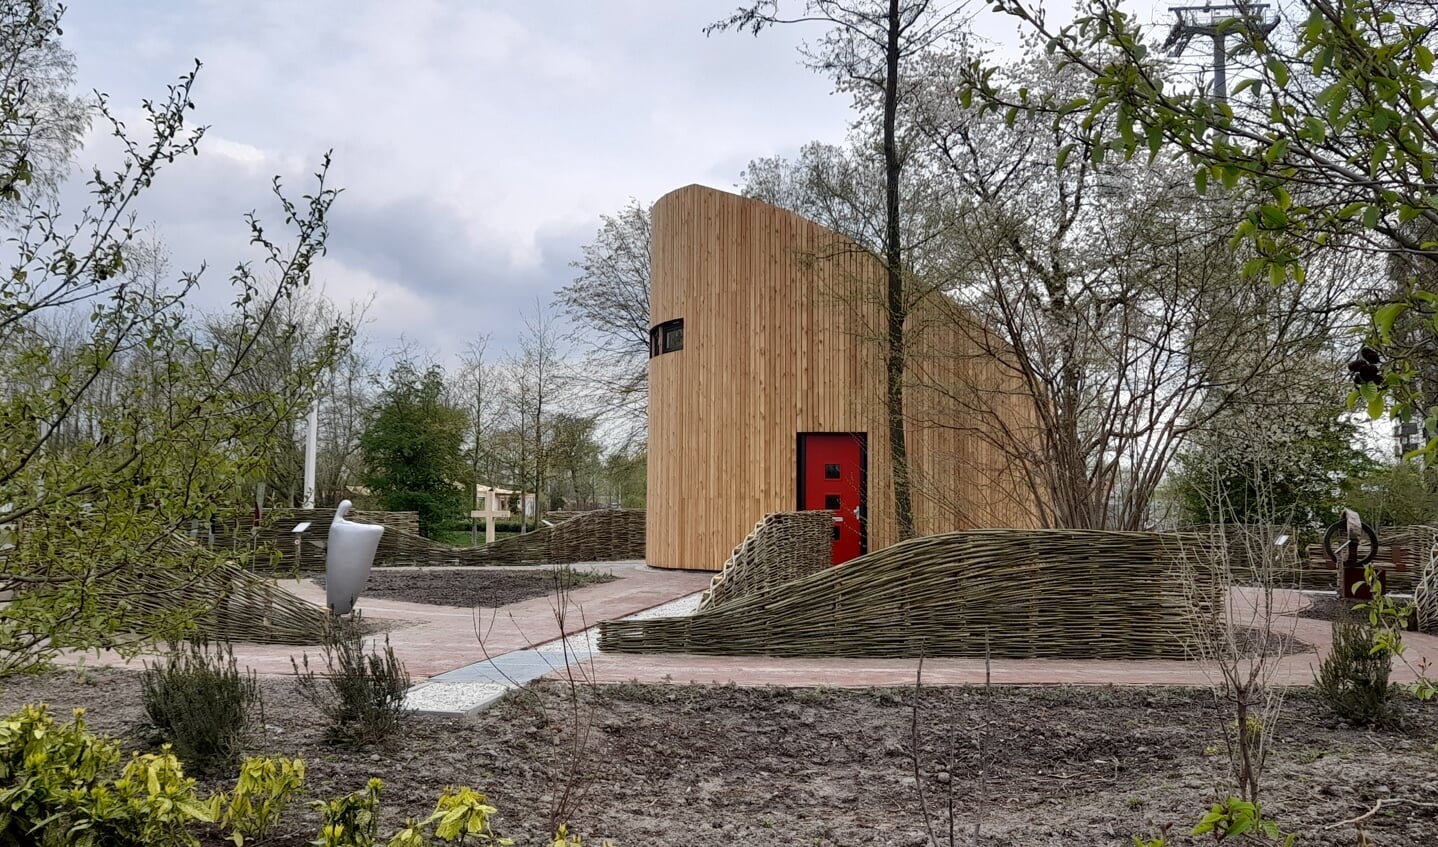 De Tiny Church, vergelijkbaar met die in Almere Poort, heeft ook een plek op de Floriade. (Foto: Almere Zaken)